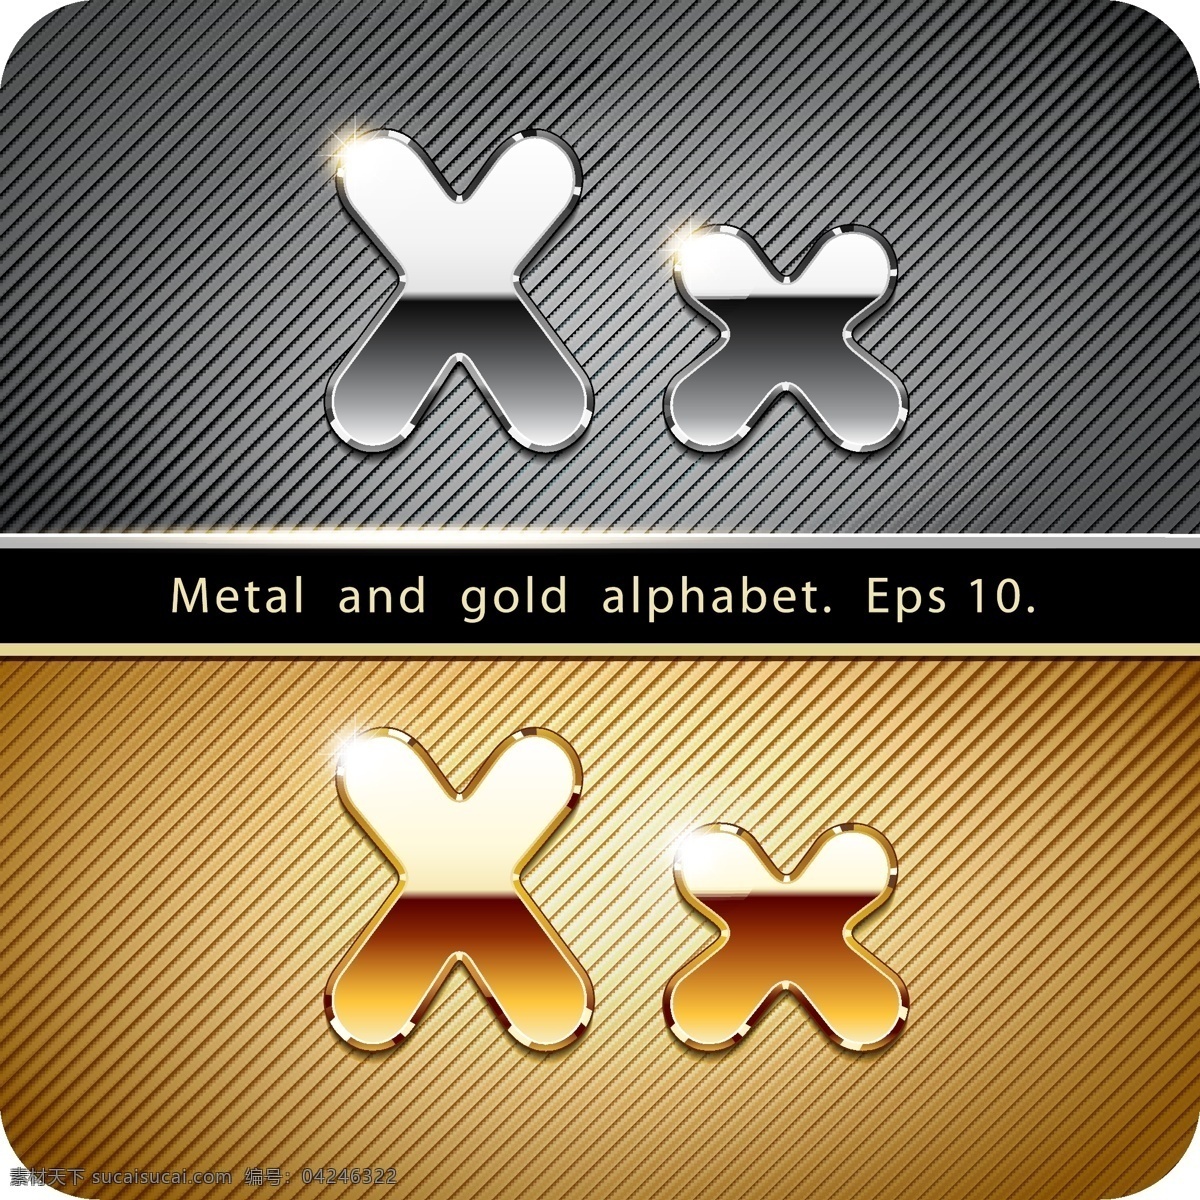 金属字母x 金属 字母 x 英文 金色 银色 书画文字 文化艺术 矢量素材 黑色